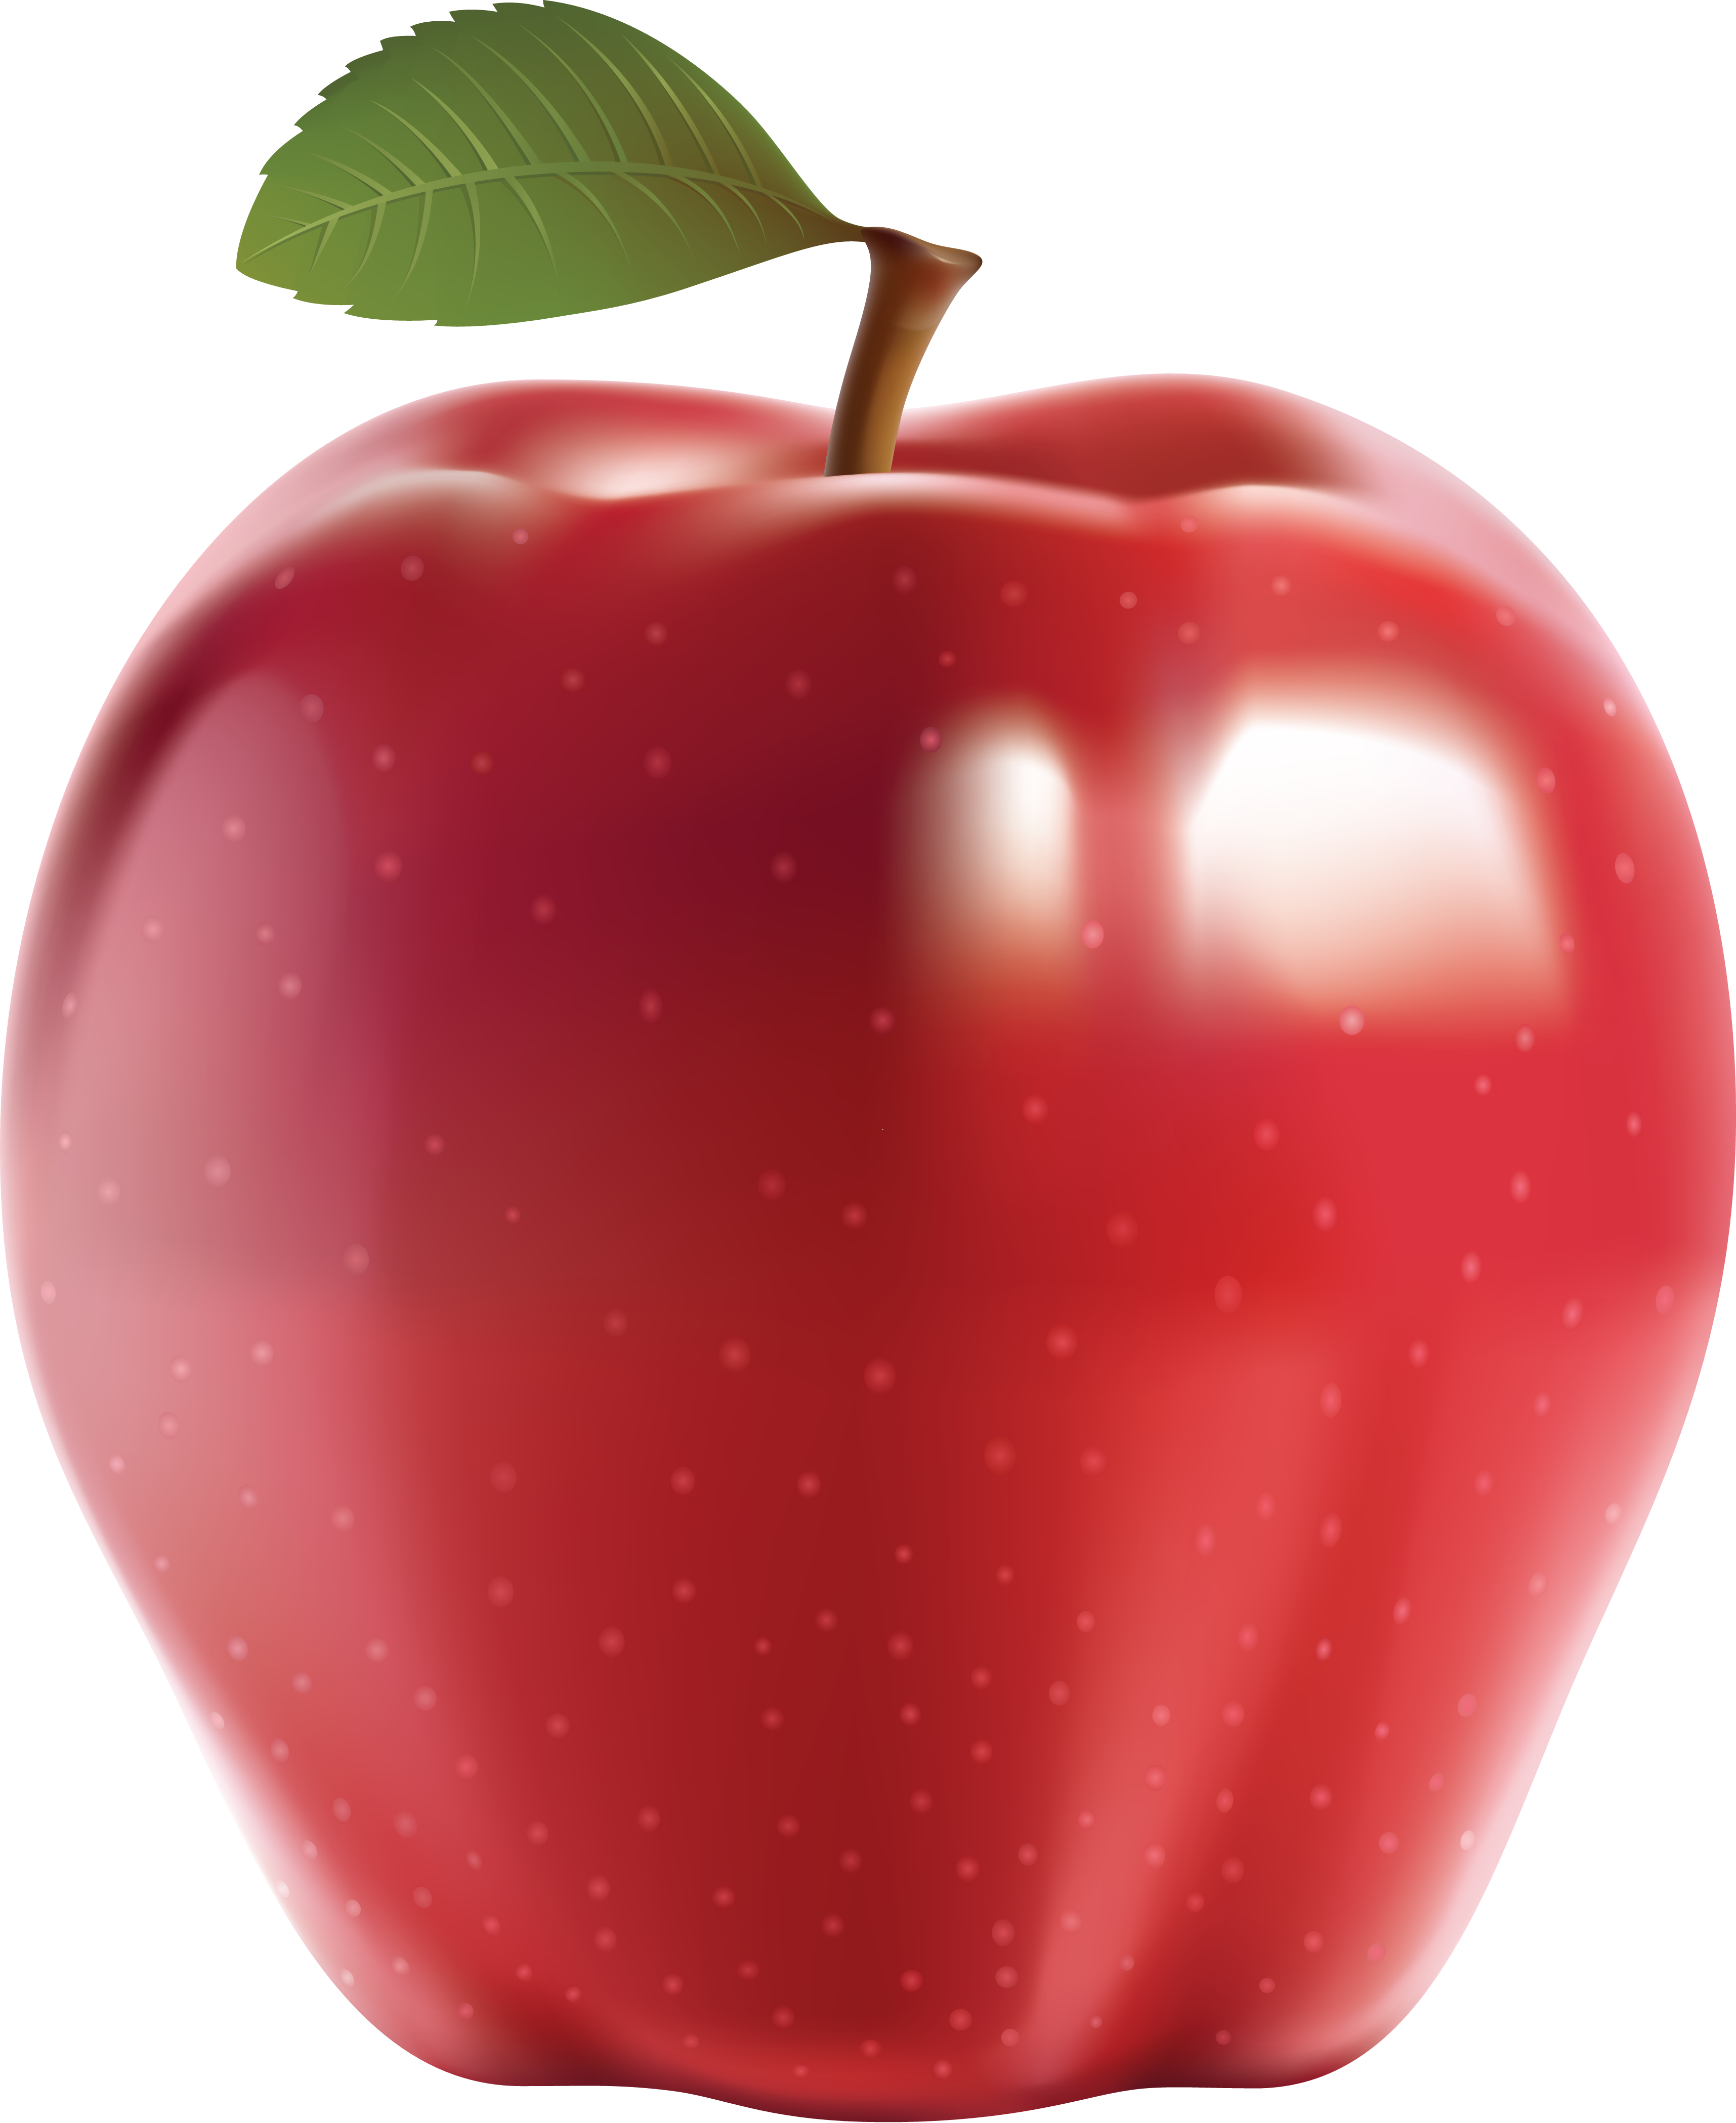 Apel merah besar